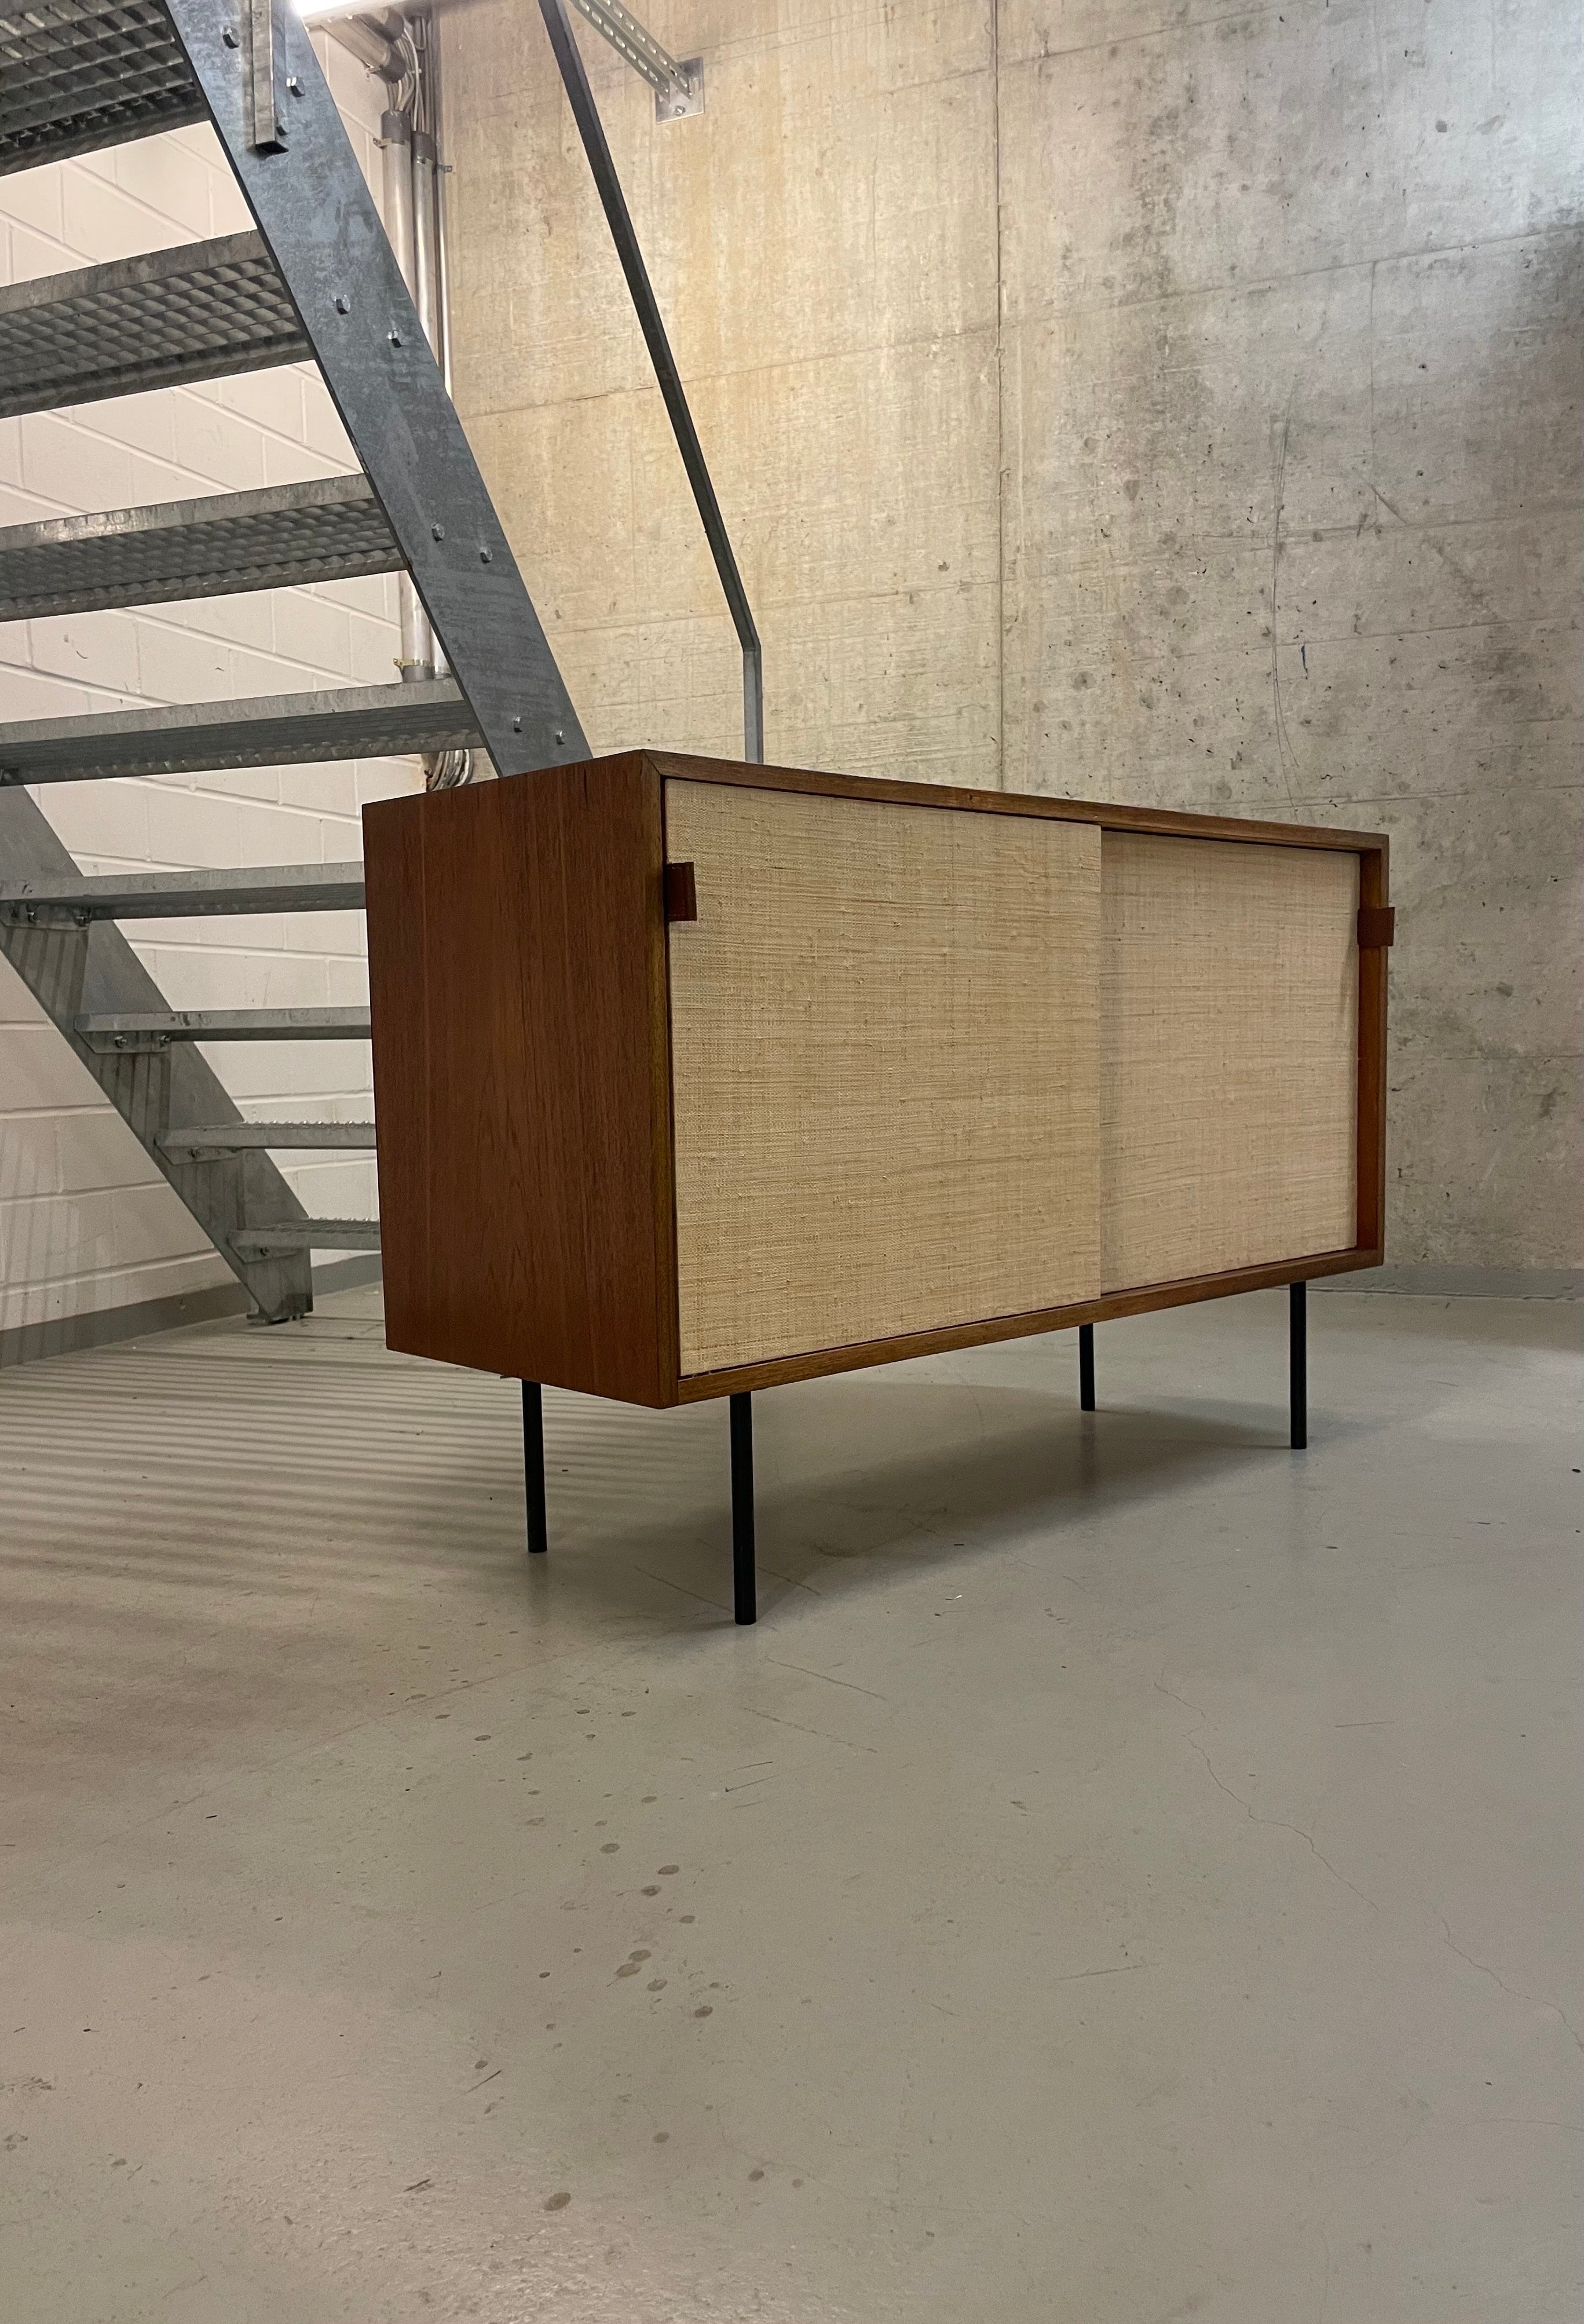 Ein klassisches modernistisches Design-Sideboard von Florence Knoll, Modell 116 für Knoll International - diese Version wurde 1968 von Knoll International in Stuttgart hergestellt. 

Er verfügt über die typischen Schiebetüren mit Seegras, die auch